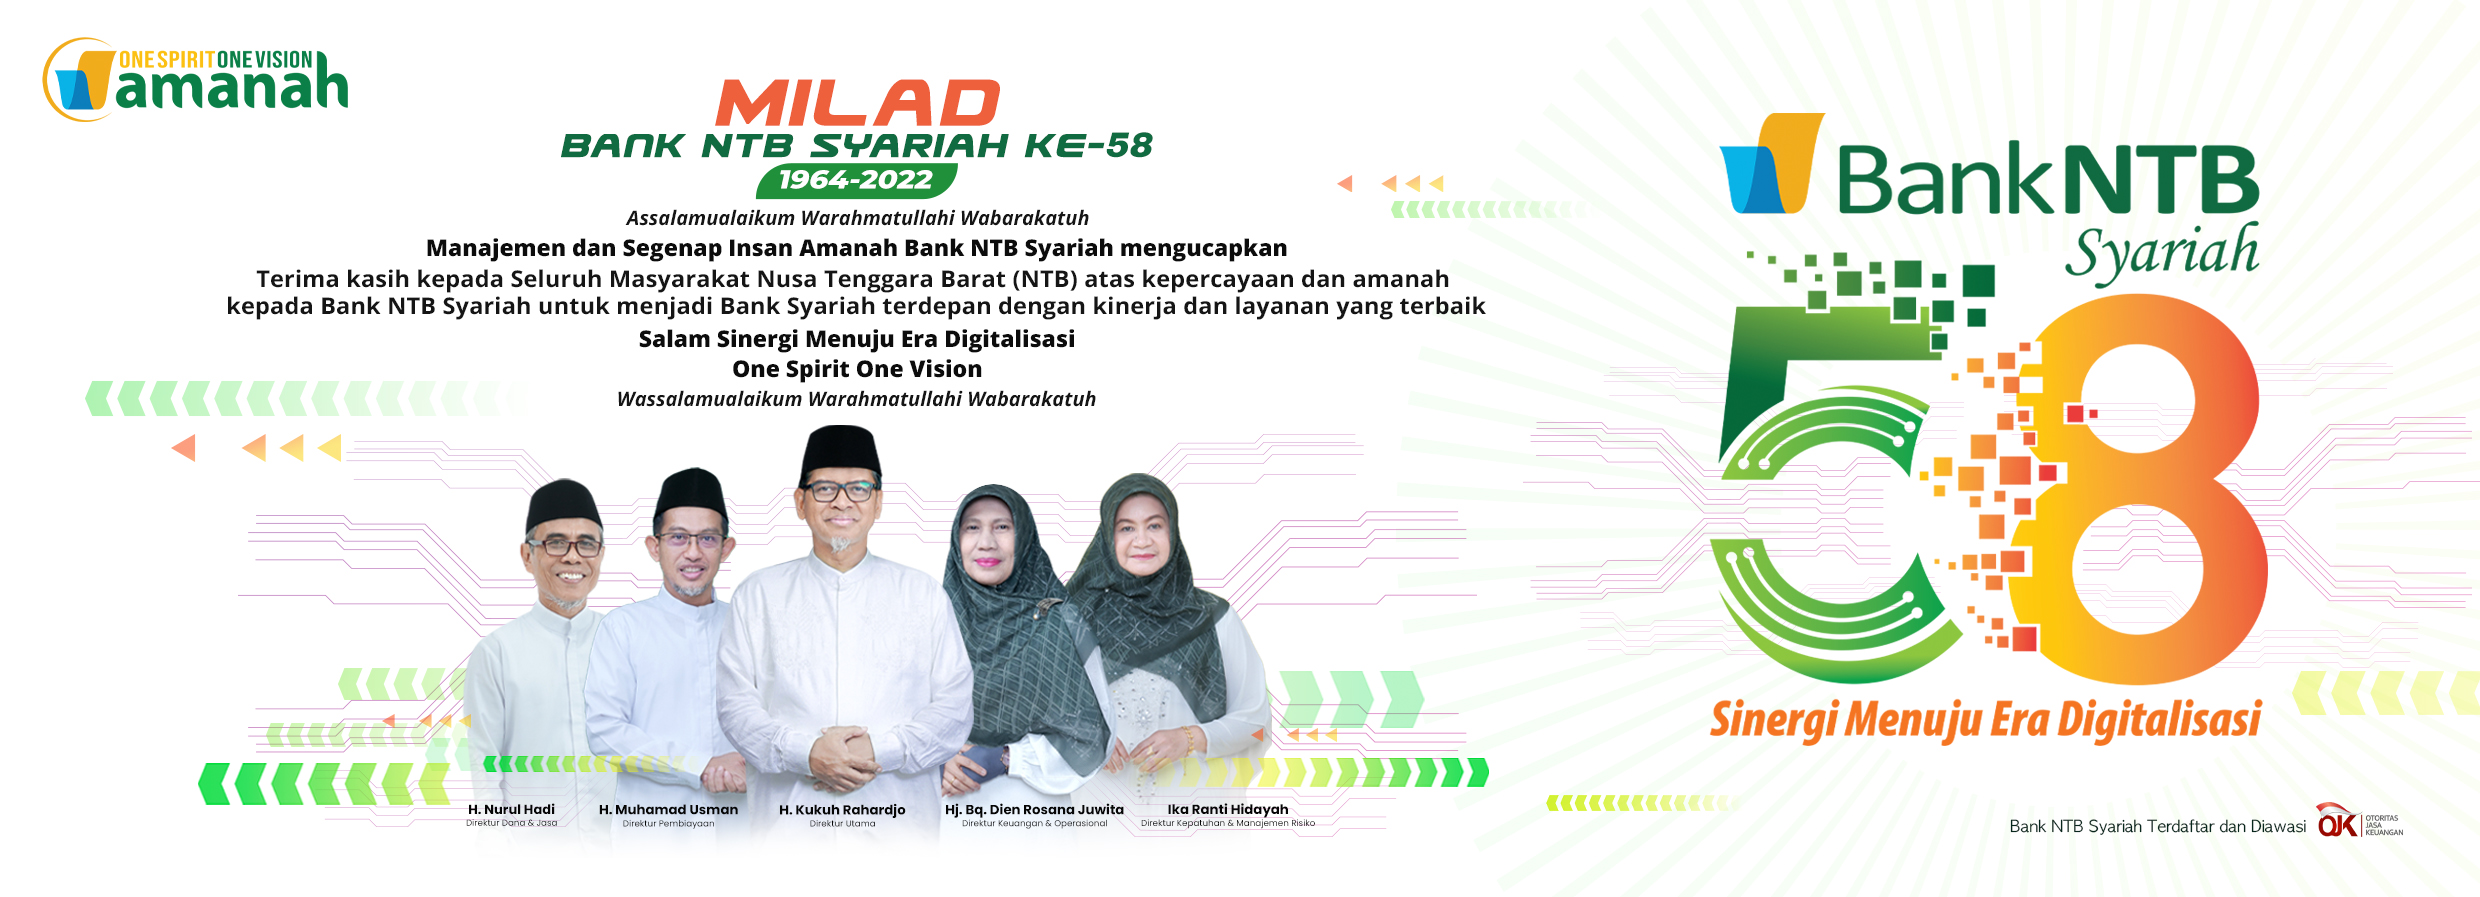 Milad-Bank-NTB-Syariah-ke-58.html